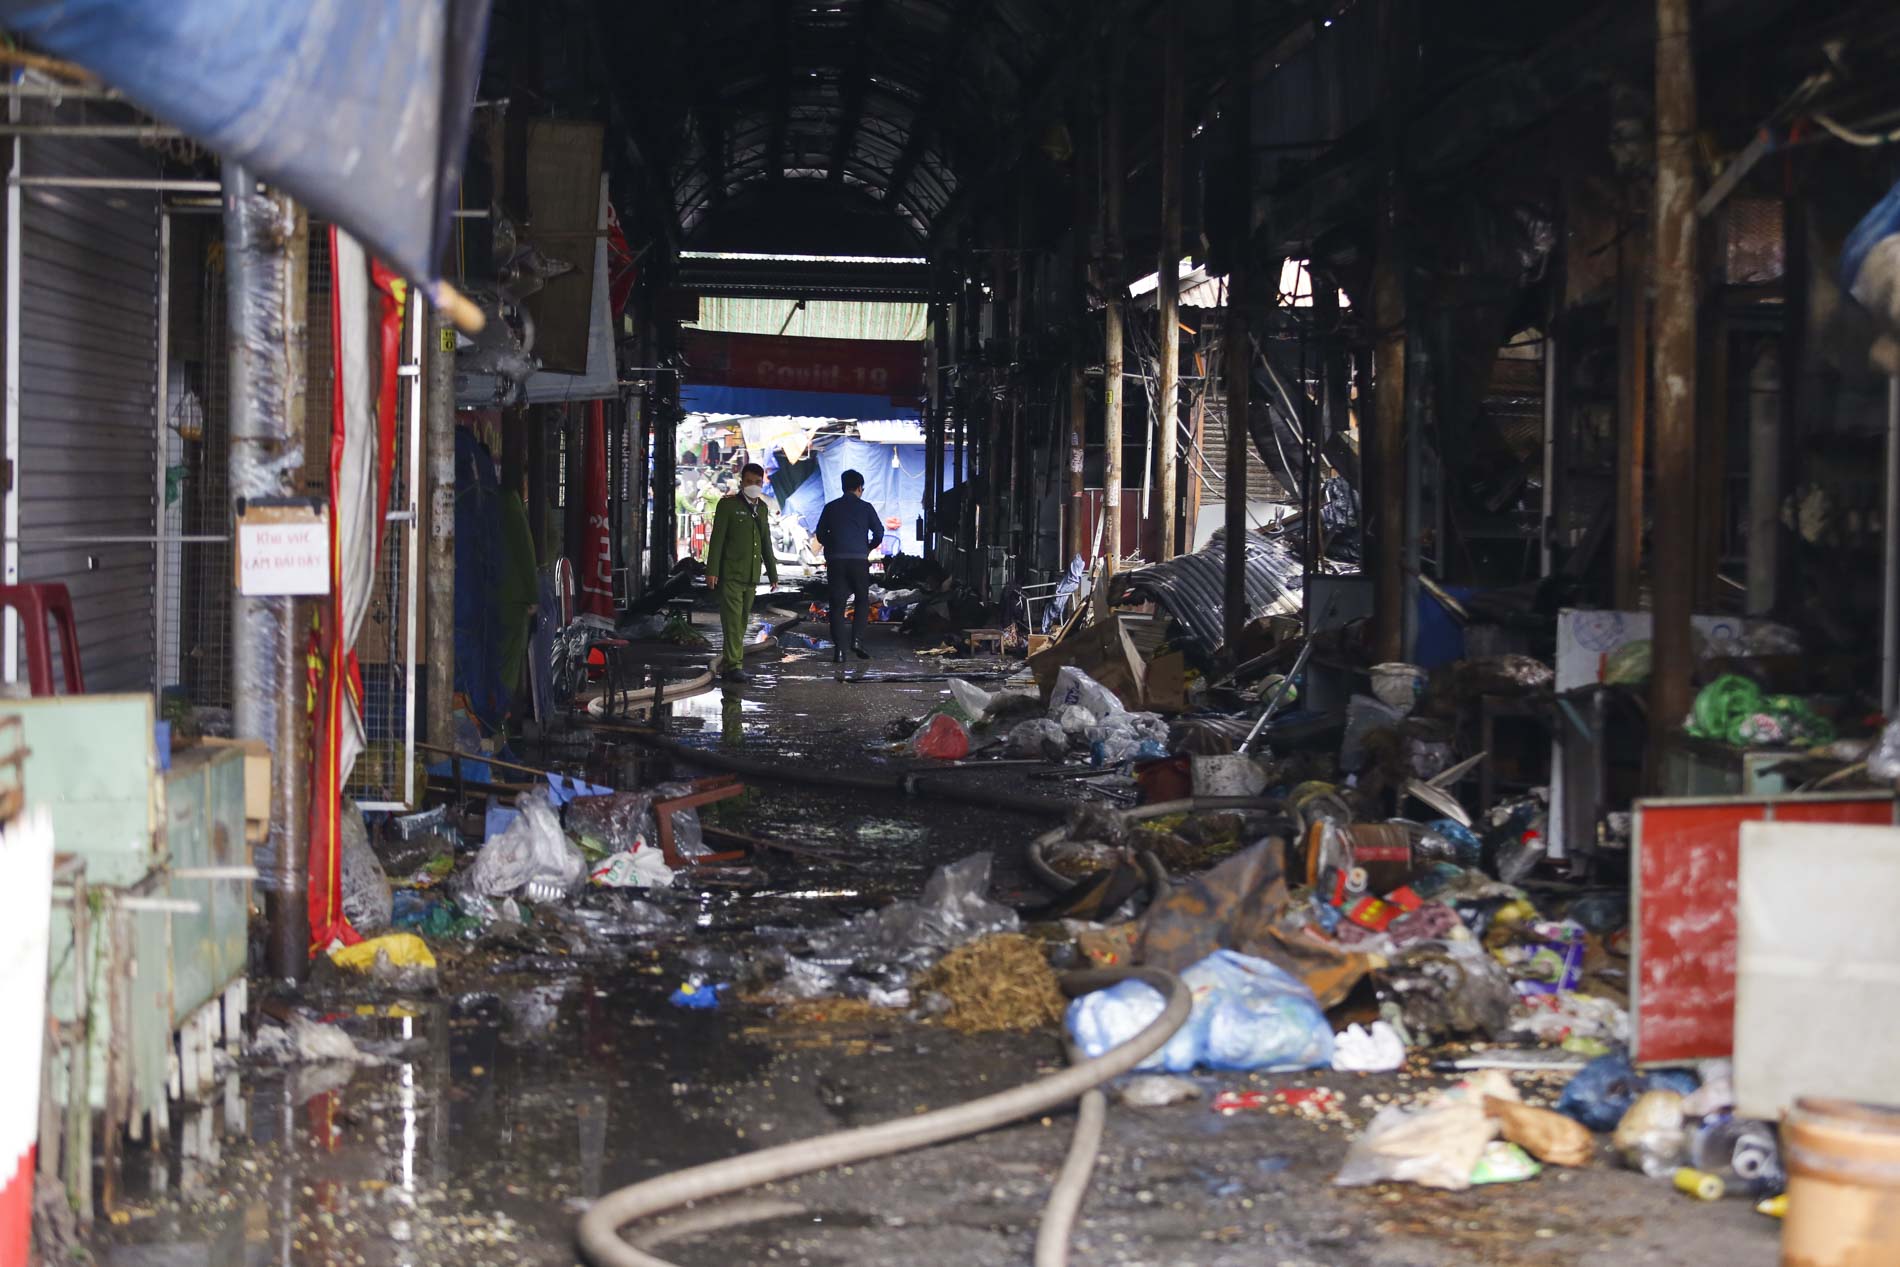 Hải Phòng: Tiểu thương đỏ hoe mắt khi nghĩ về tài sản thành tro bụi sau vụ cháy tại chợ Tam Bạc ngày 12/2 - Ảnh 8.